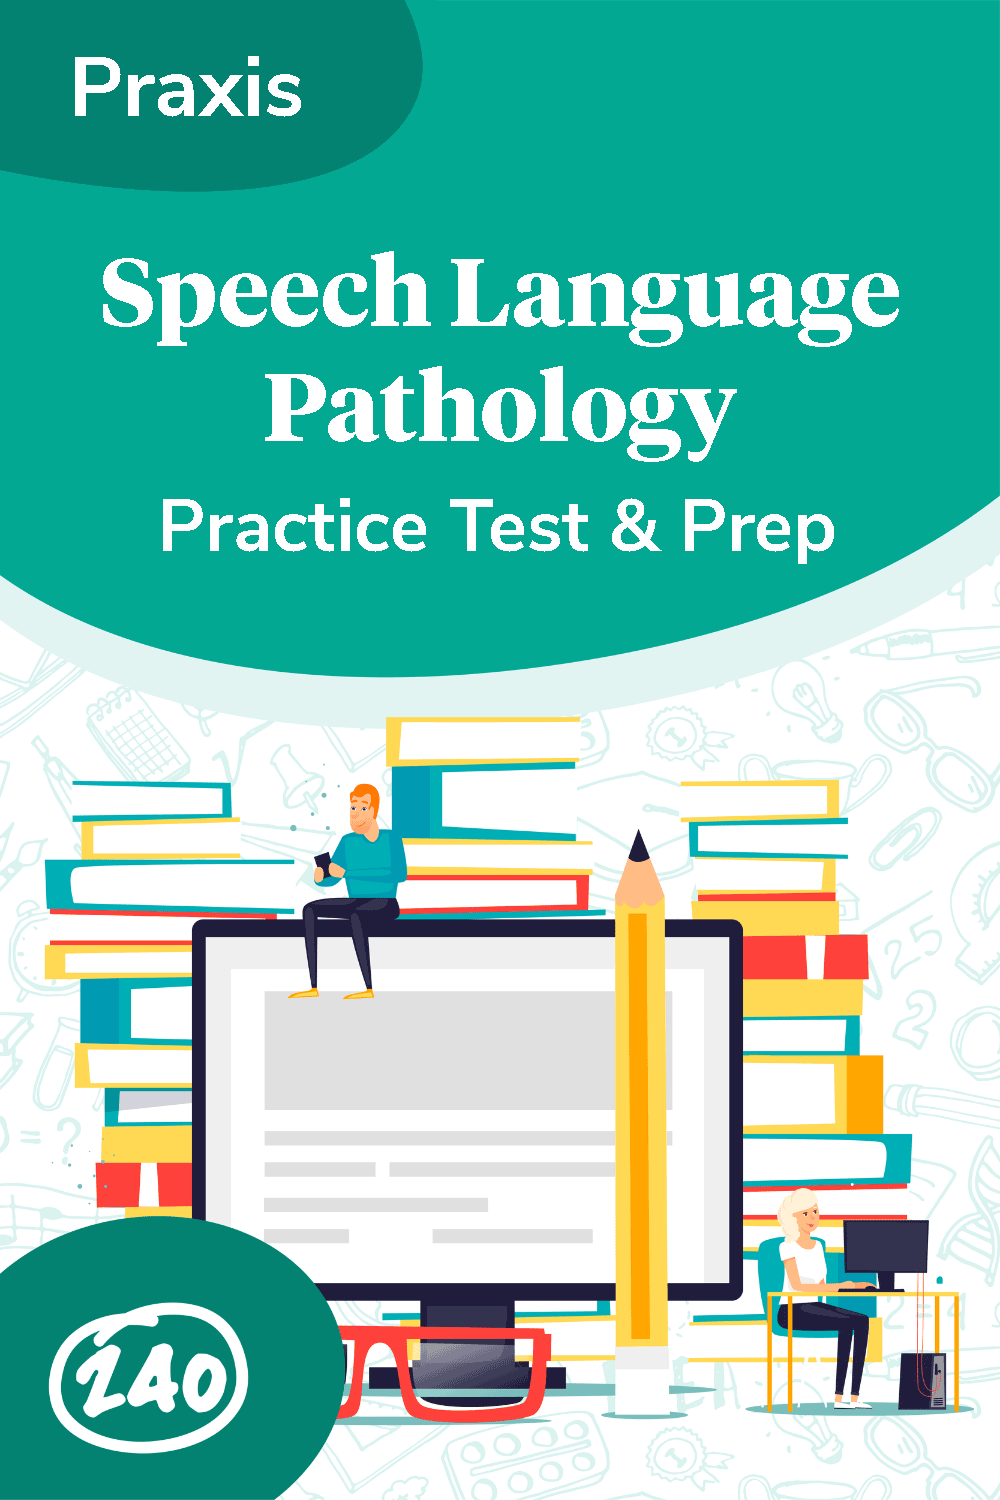 Praxis Speech Language Pathology Pin